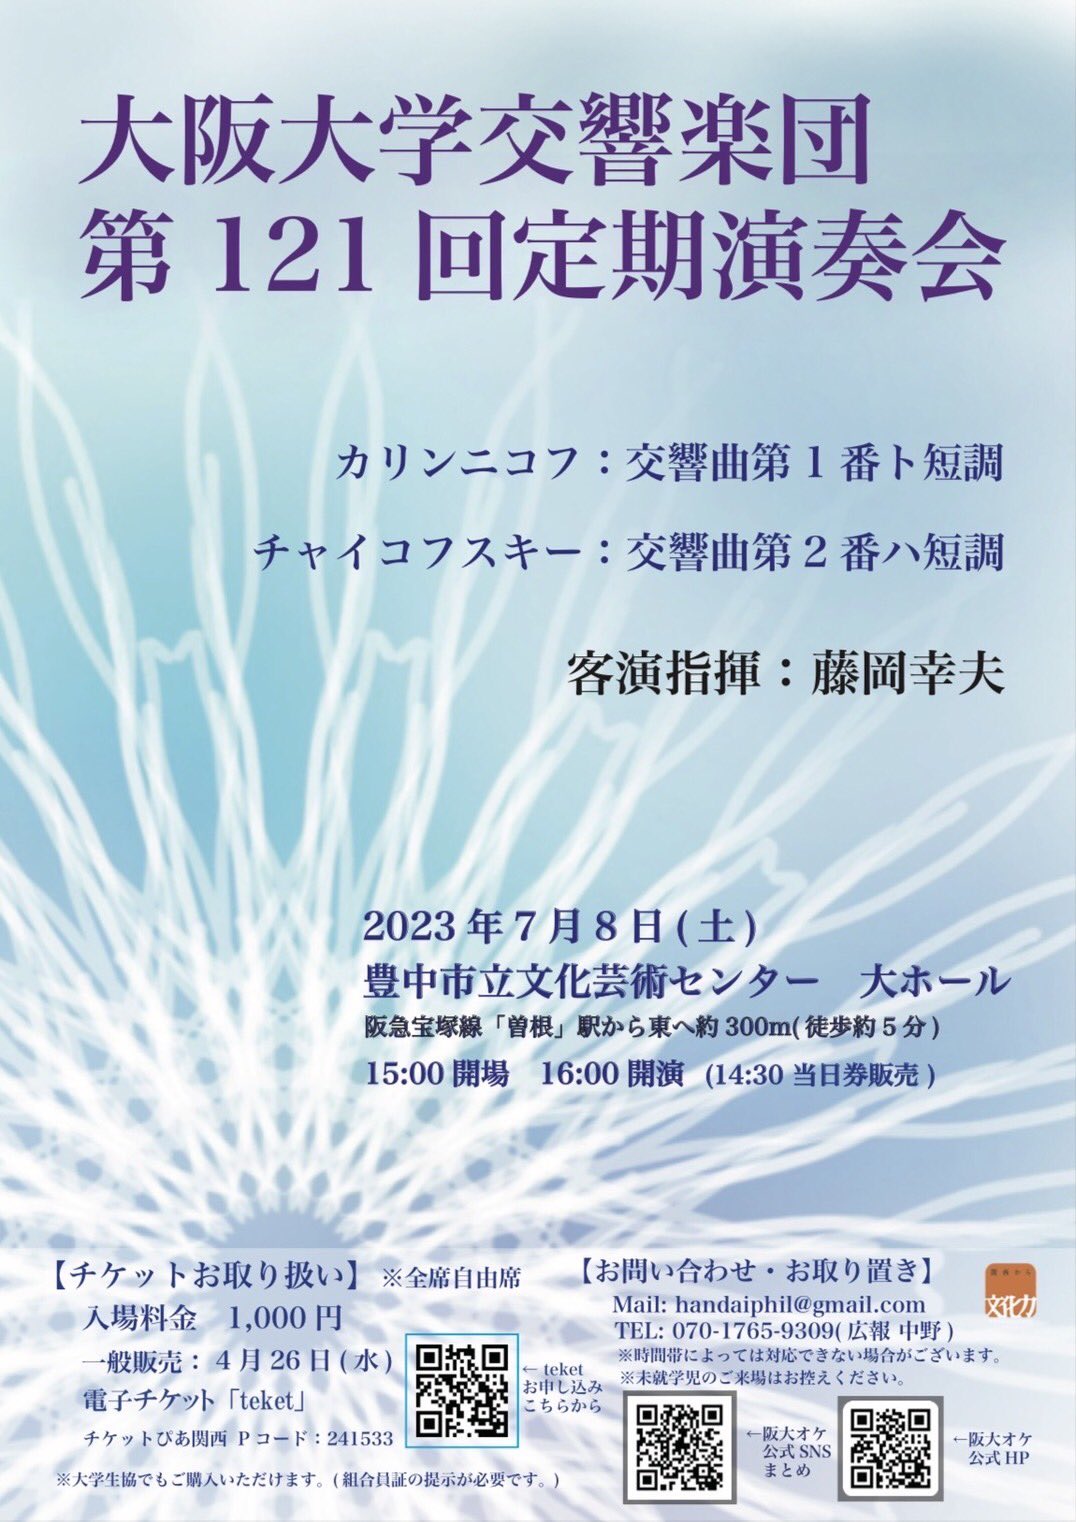 大阪大学交響楽団第121回定期演奏会